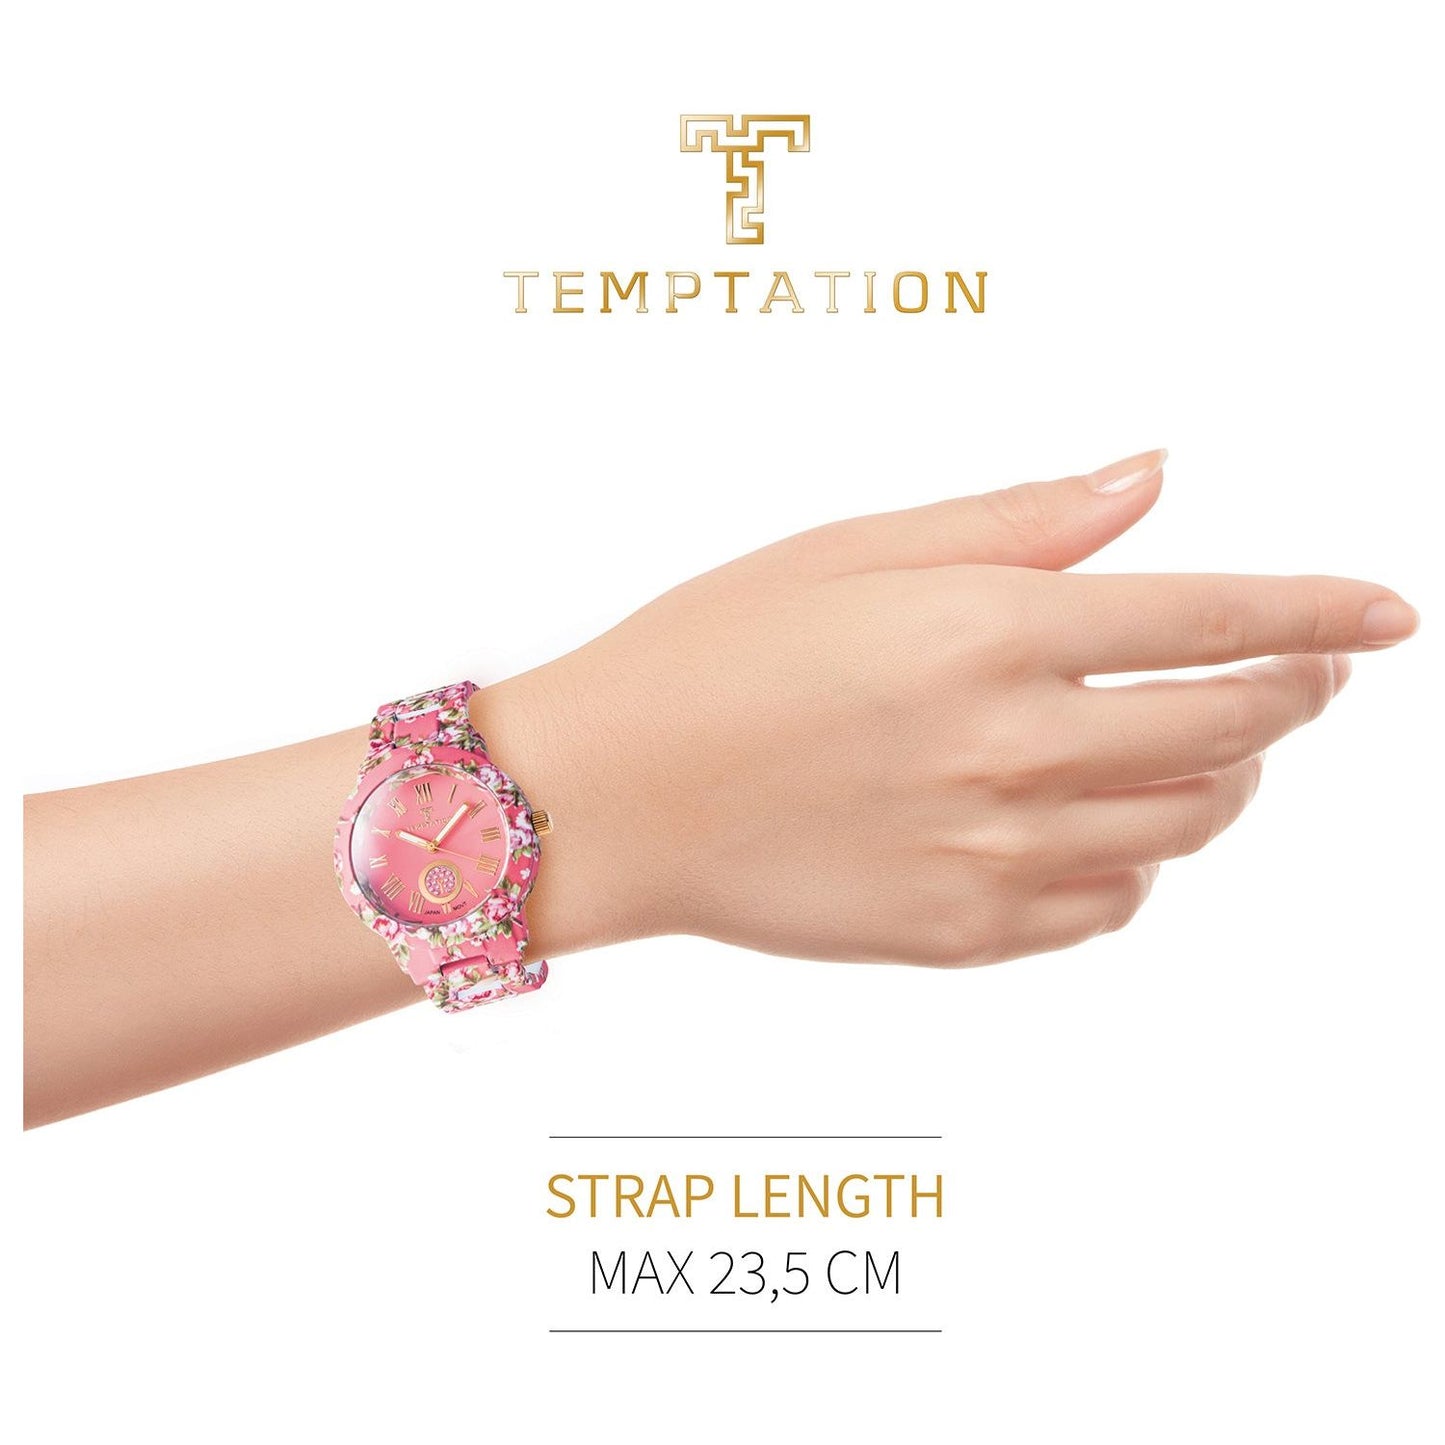 TEMPTATION TEMPTATION MOD. TEA-2015-01 WATCHES temptation-mod-tea-2015-1